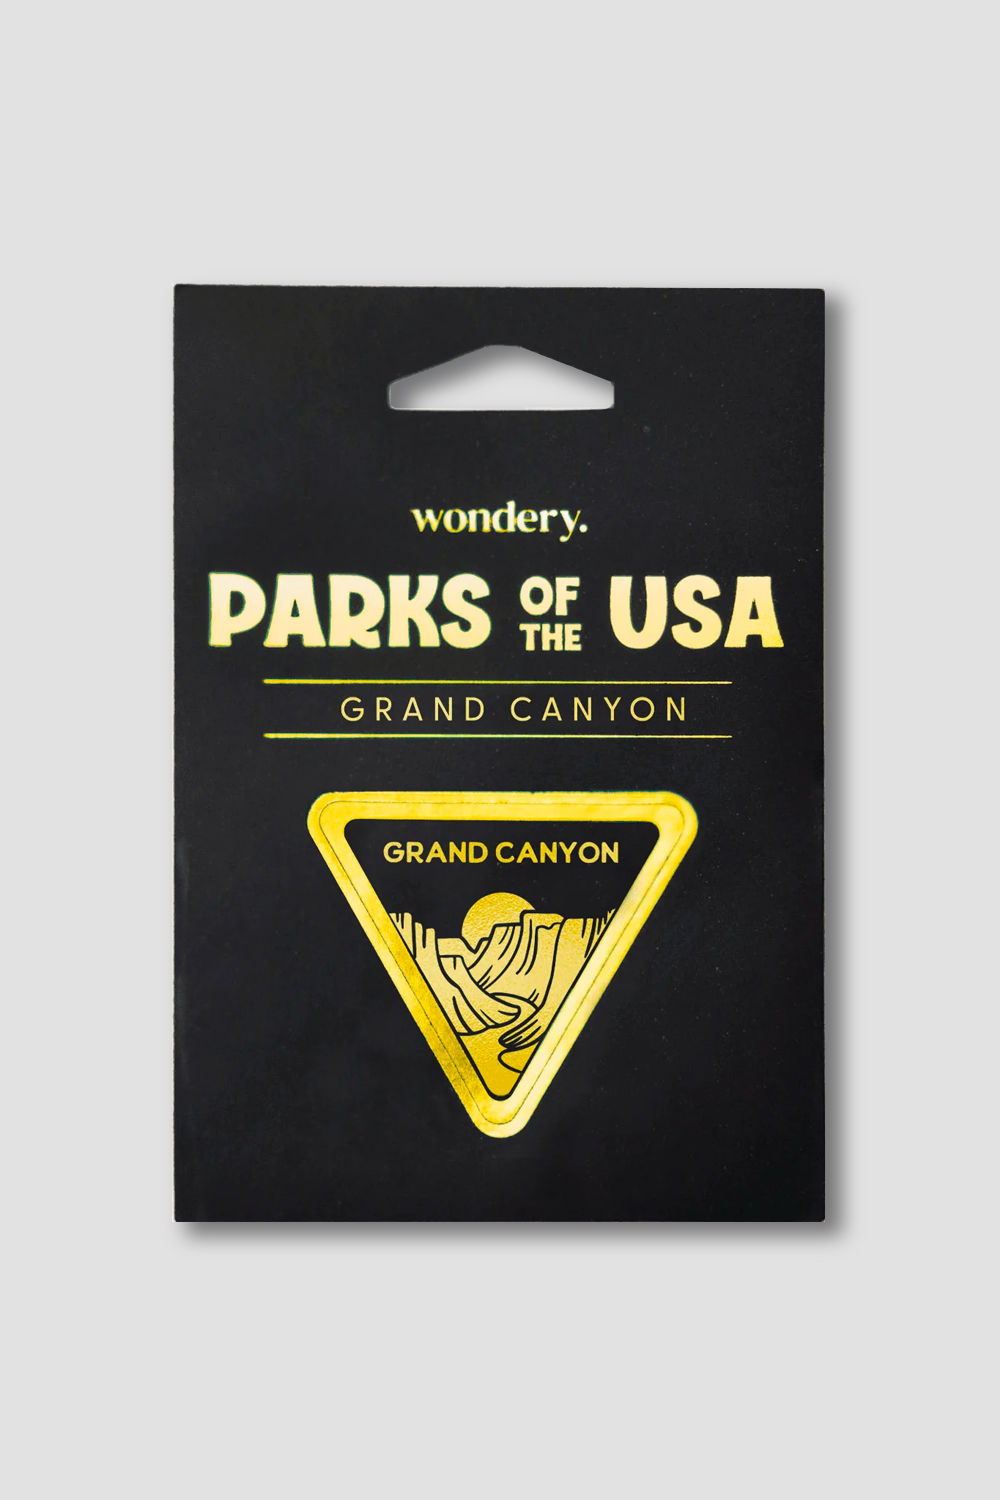 #national park_grand canyon _USA National Park souvenir stickers